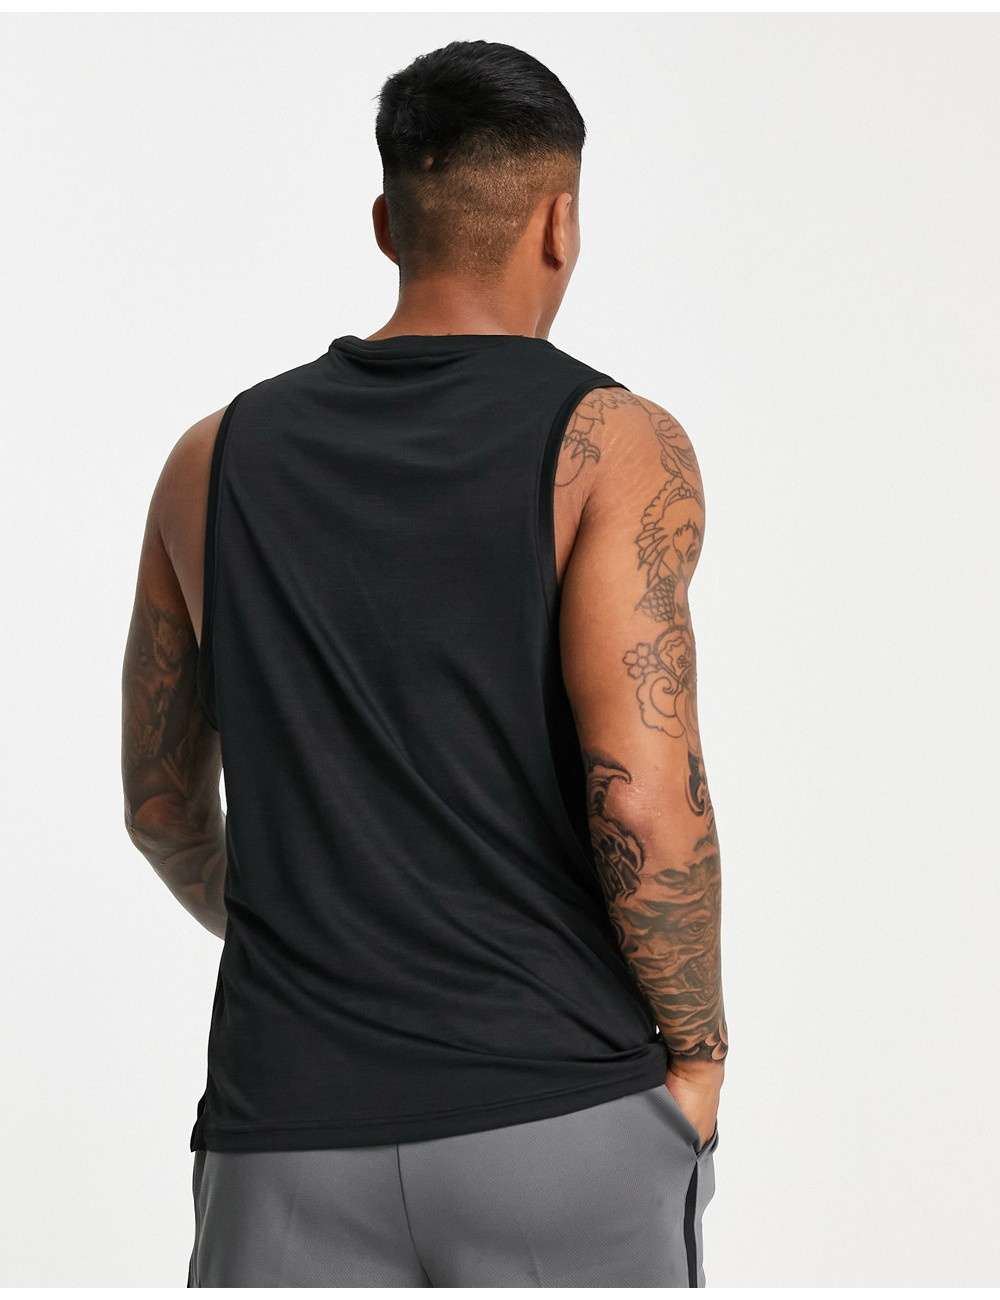 Nike Superset vest in black